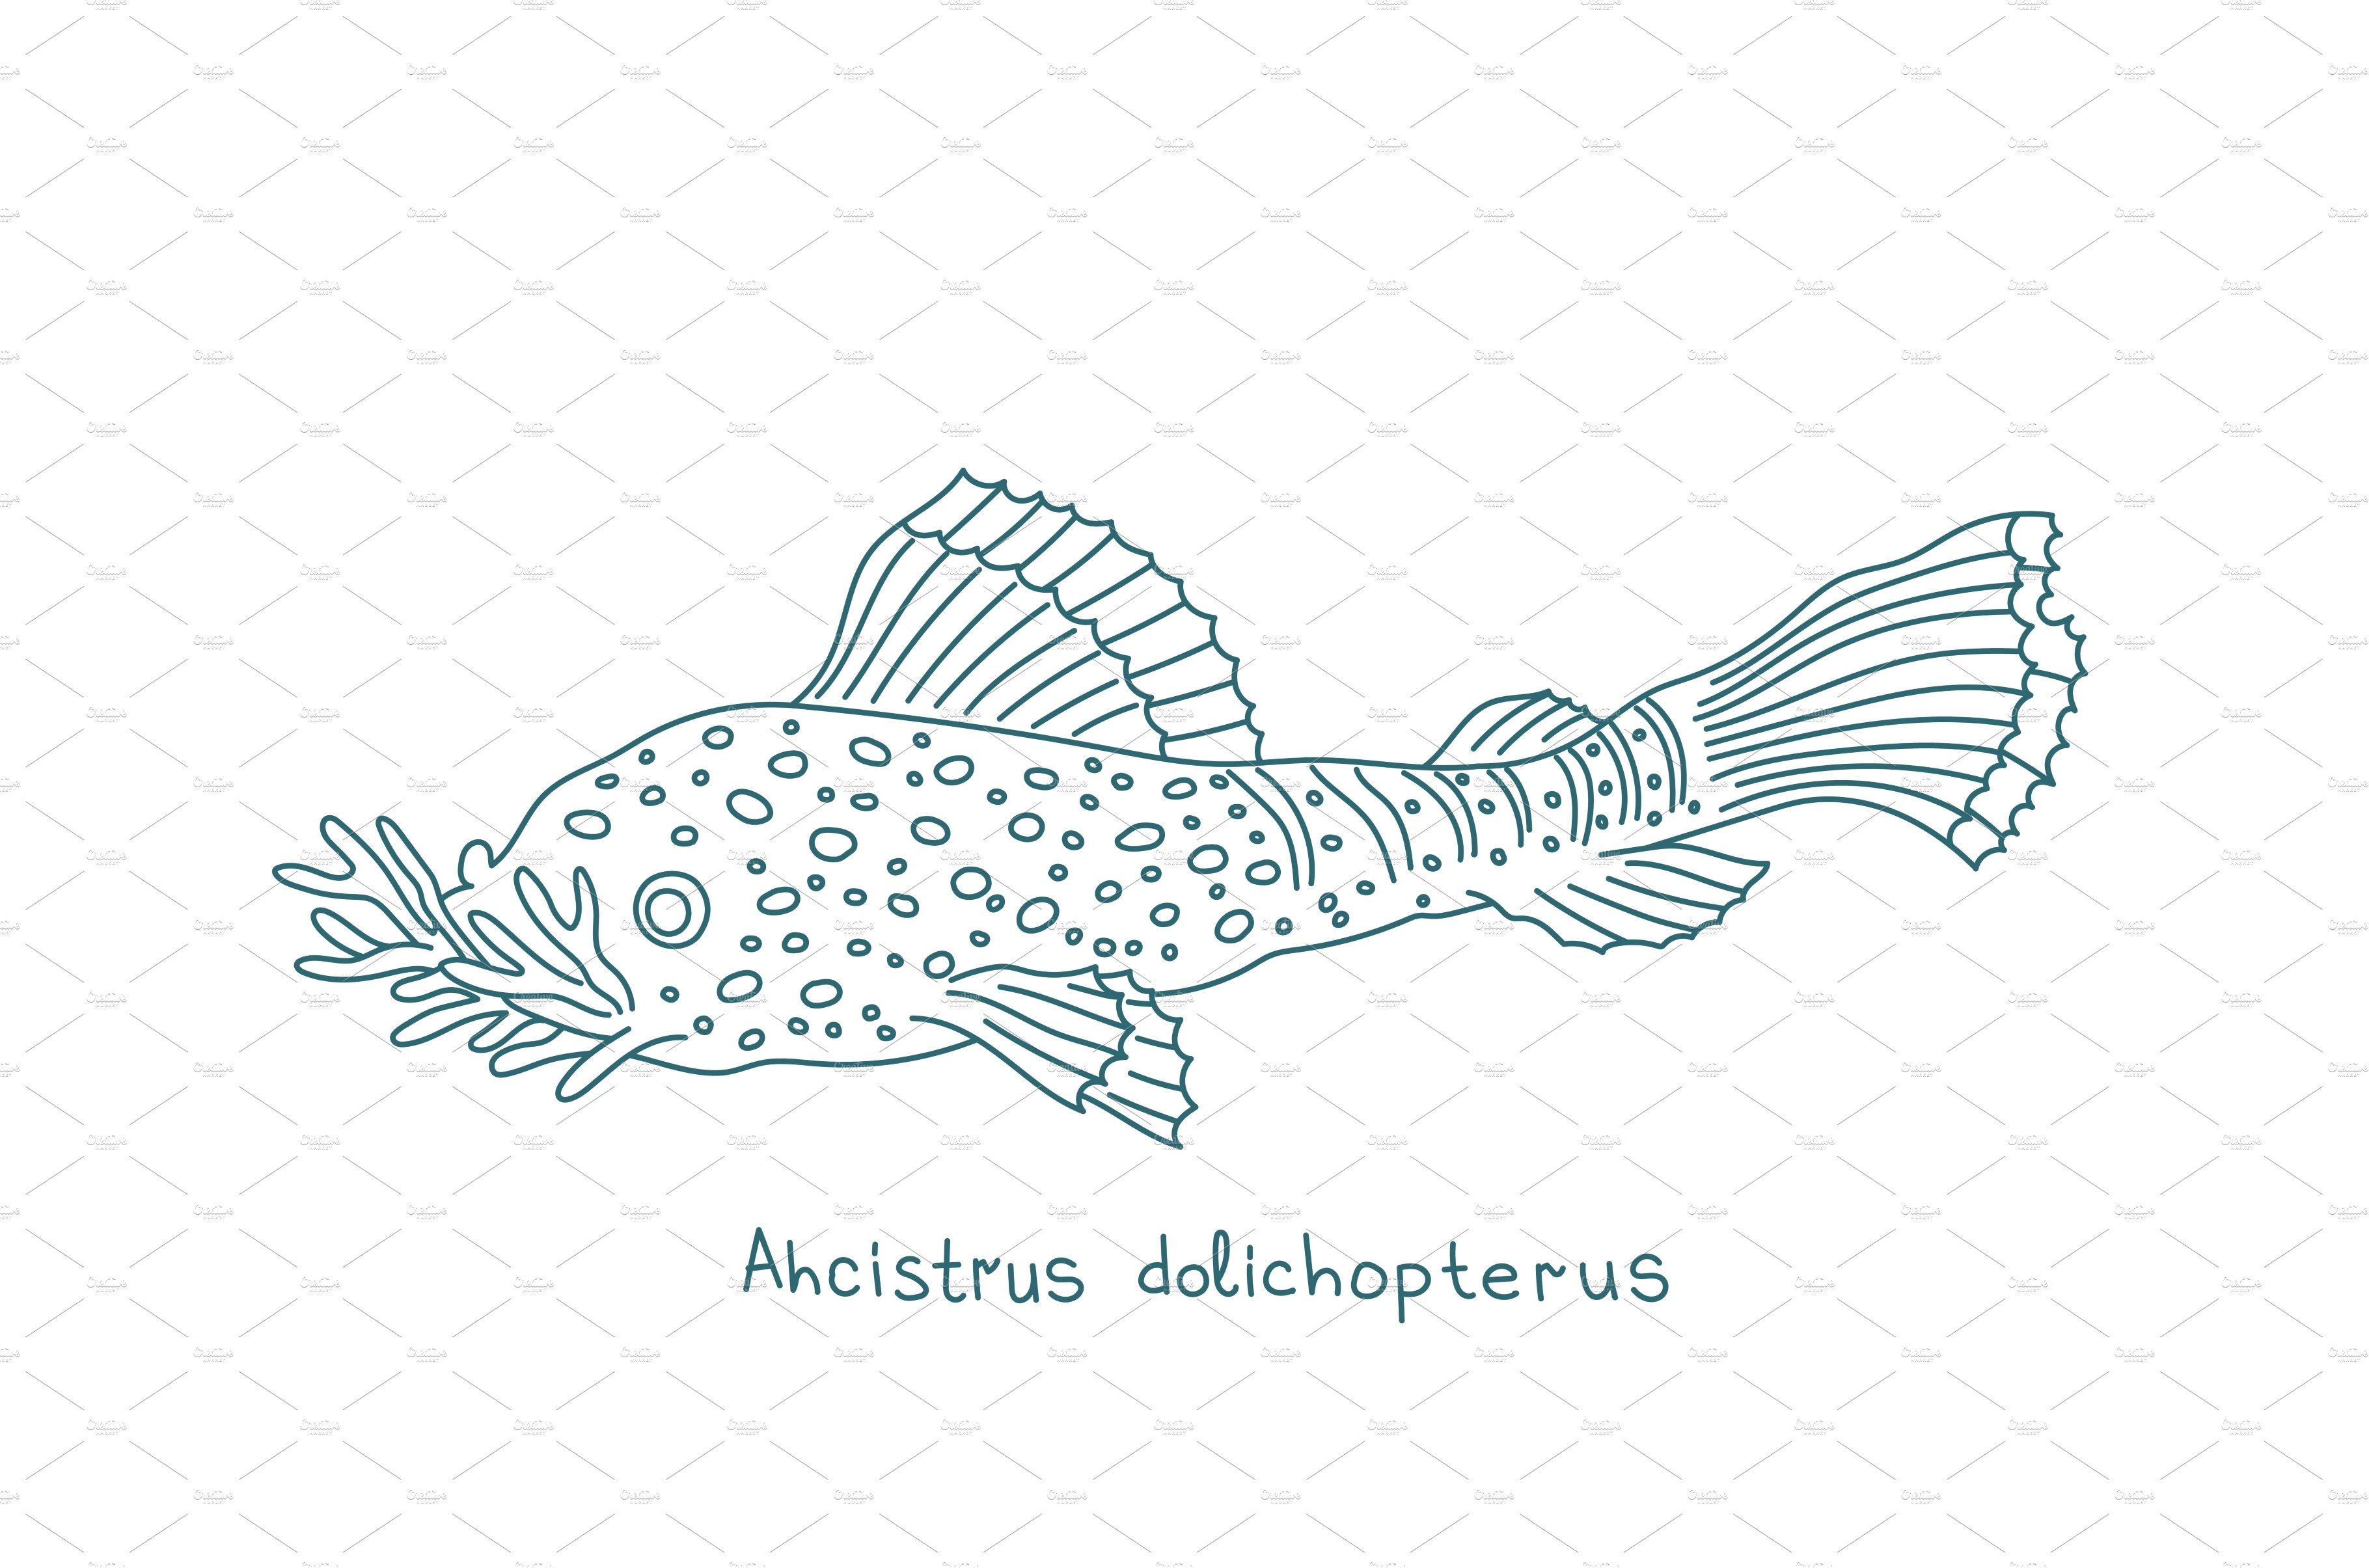 Bushymouth catfish. Ancistrus cover image.